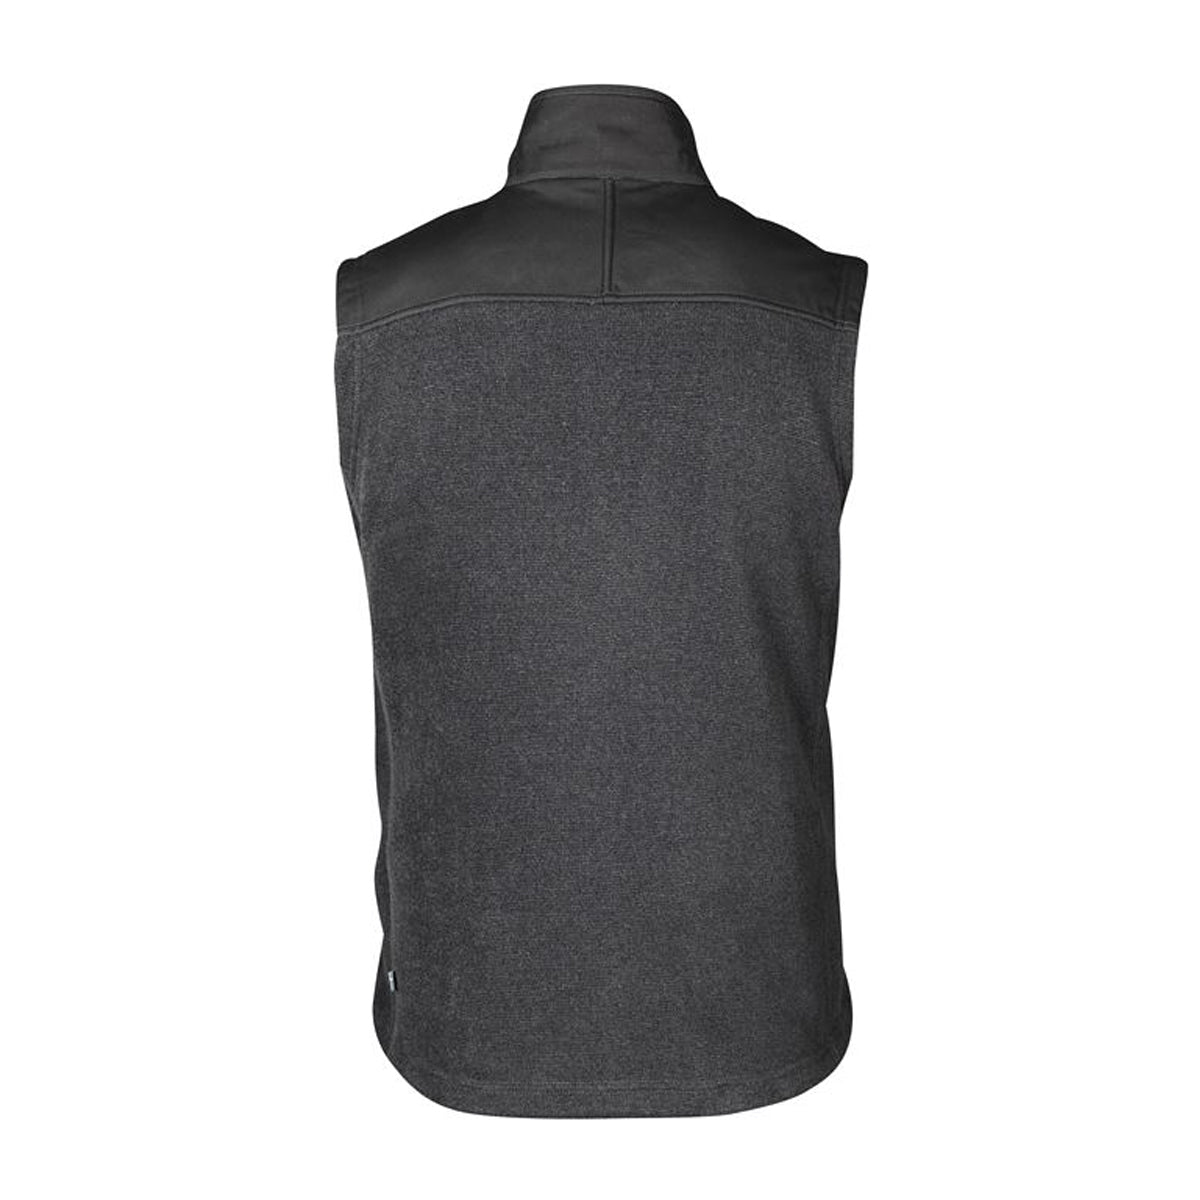 Fjallraven Buck Fleece Vest in  by GOHUNT | Fjallraven - GOHUNT Shop